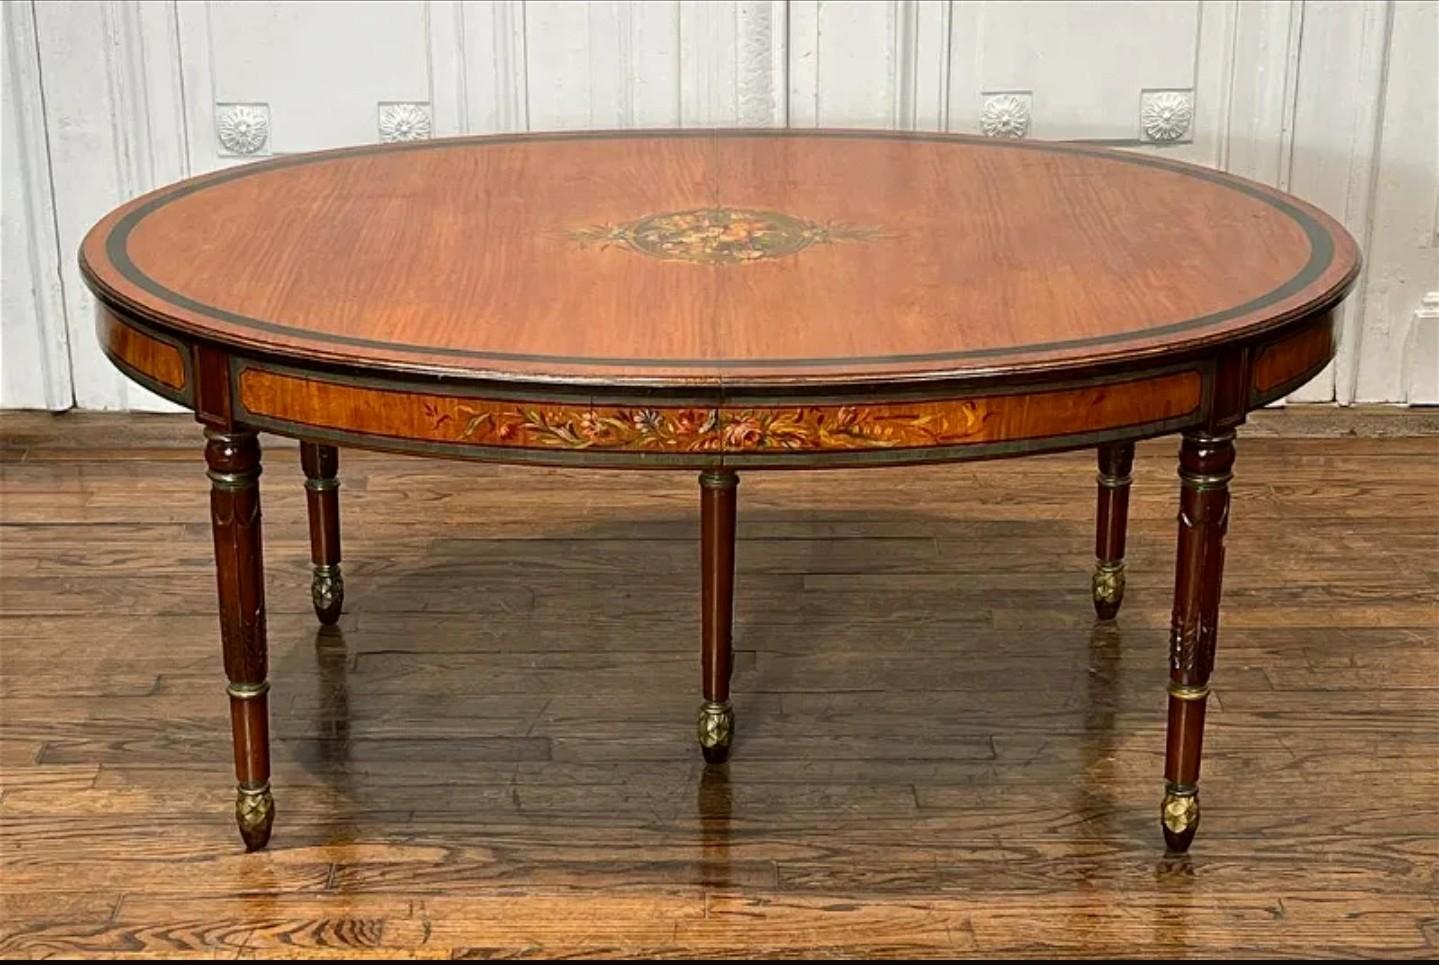 Unique en son genre, cette table à déjeuner à rallonge en bois satiné d'époque édouardienne (1901-1910), décorée à la peinture du goût d'Adams, a été transformée en table à cocktail par un professionnel, avec des pieds réduits.

Exquisément fabriqué